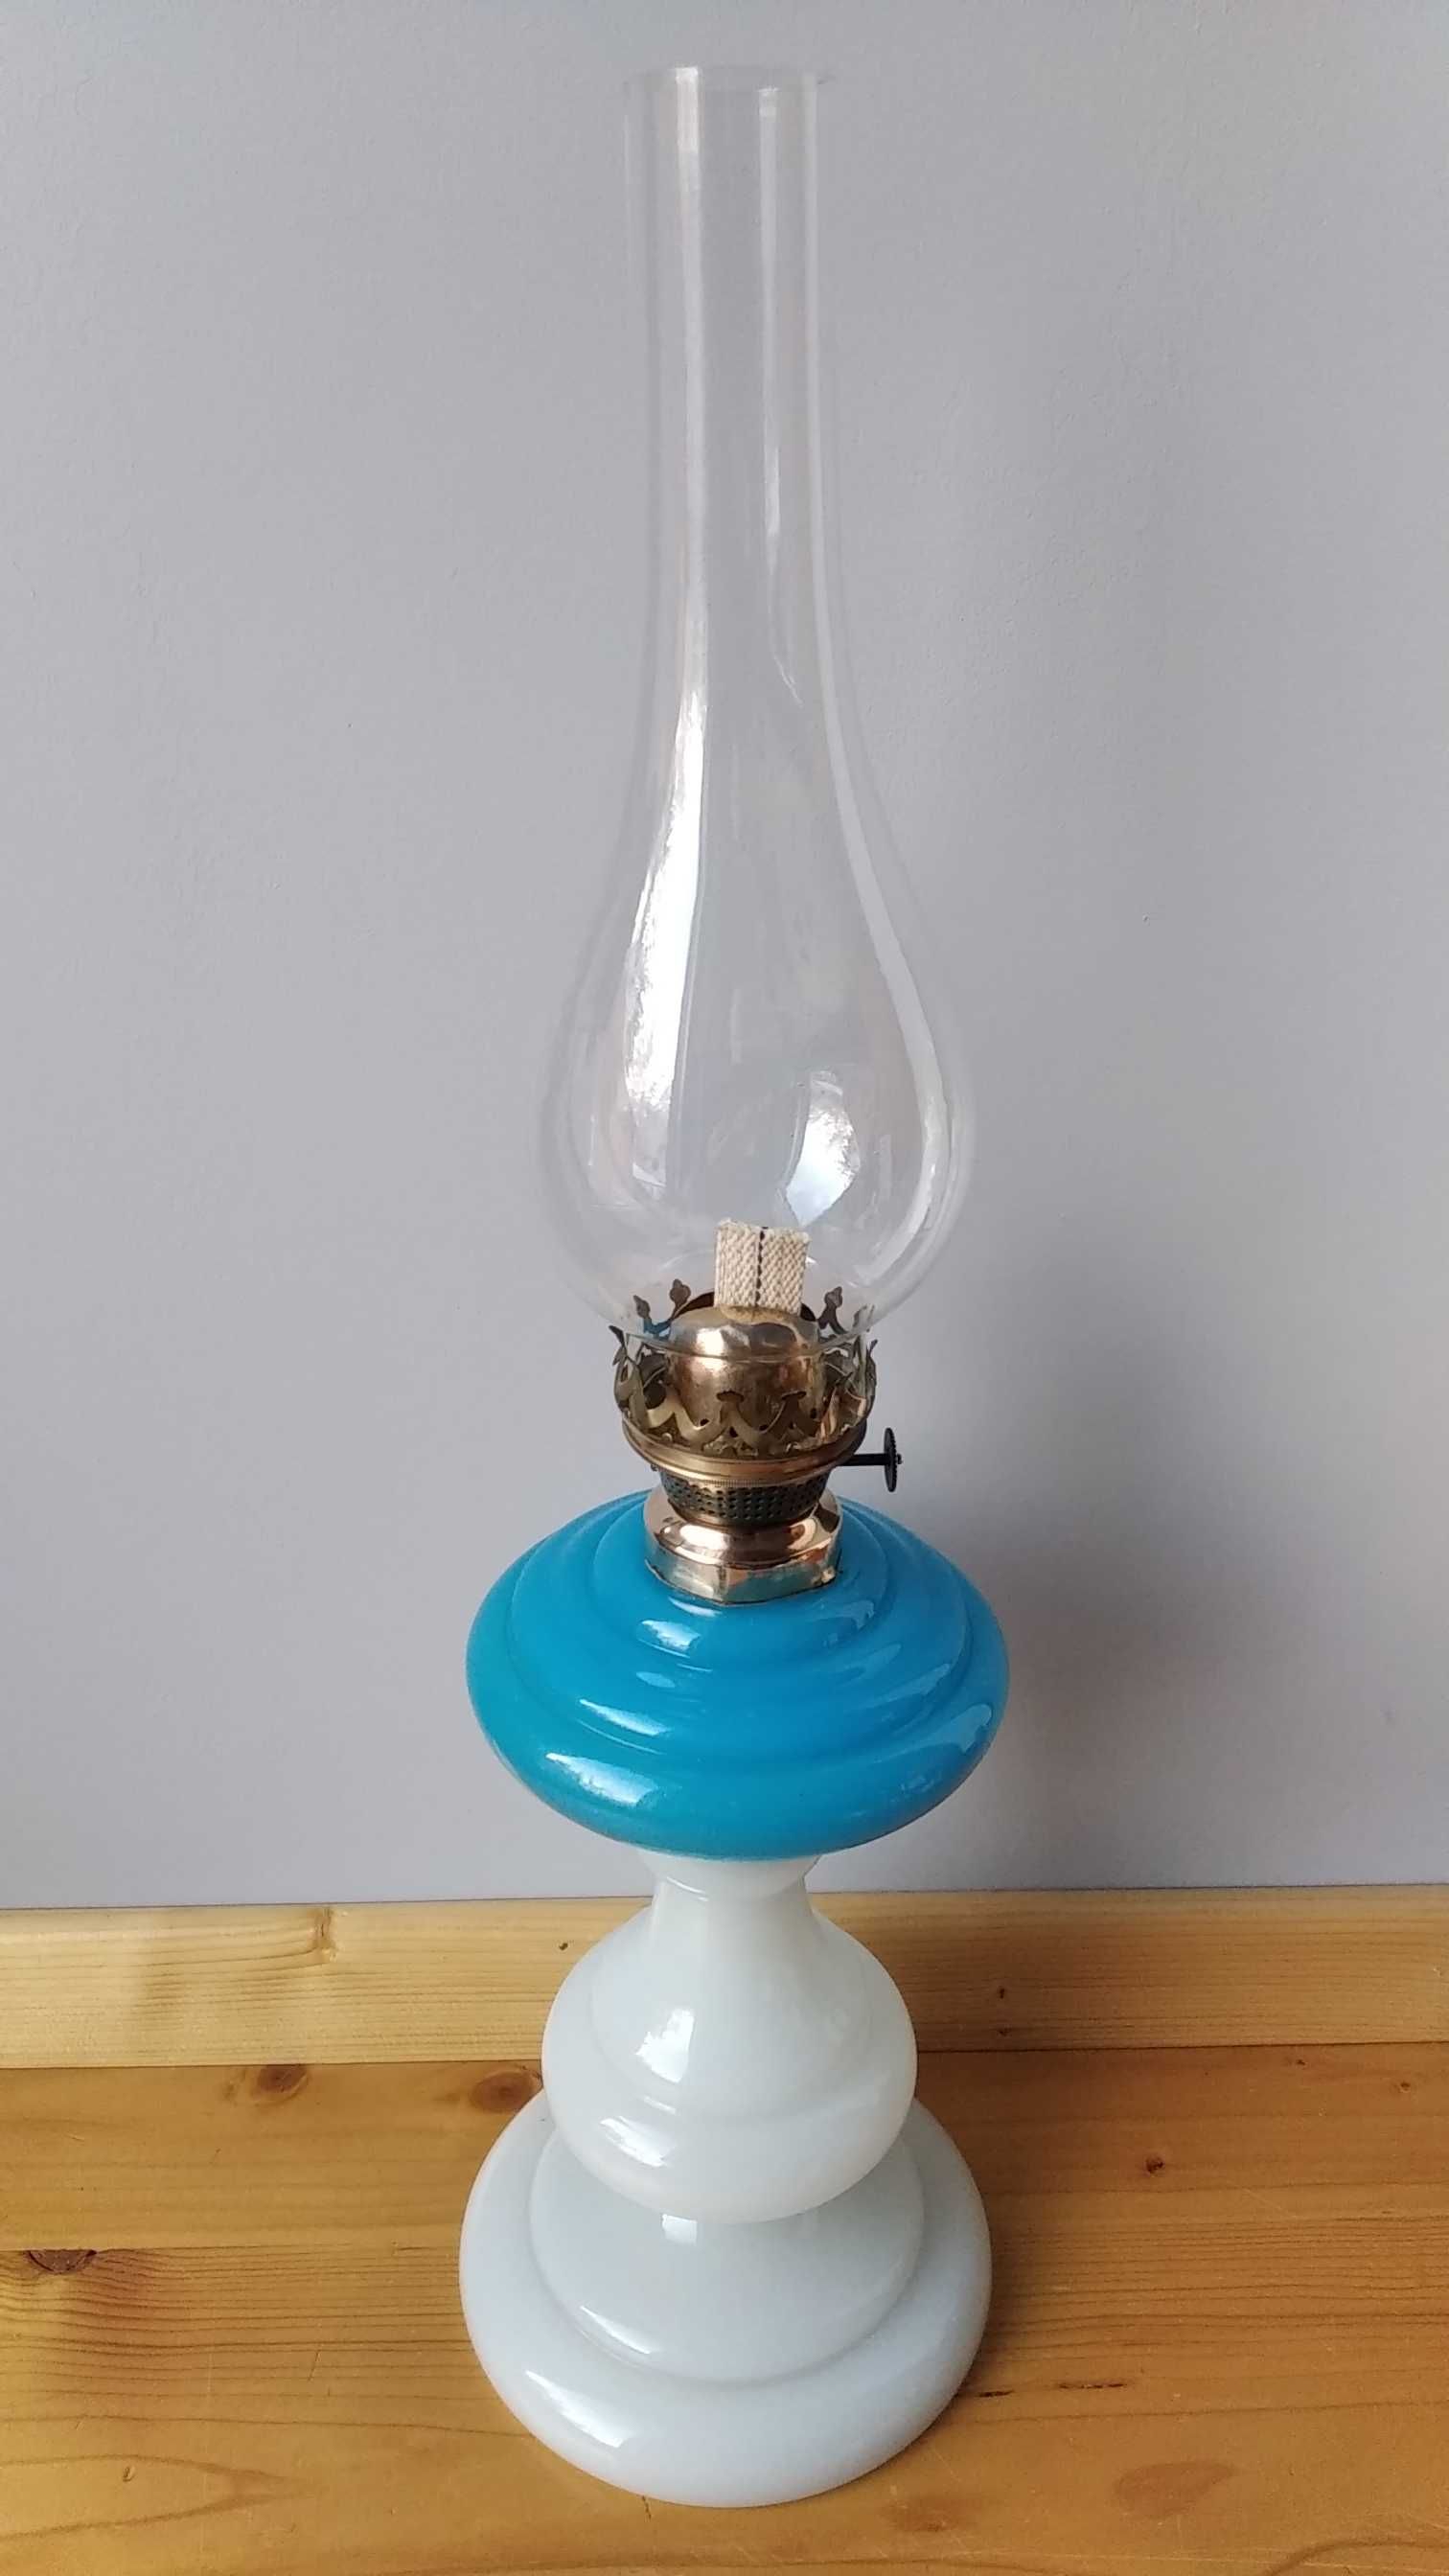 Lampa naftowa L&B czyli Lampeur Bernard. Secesja